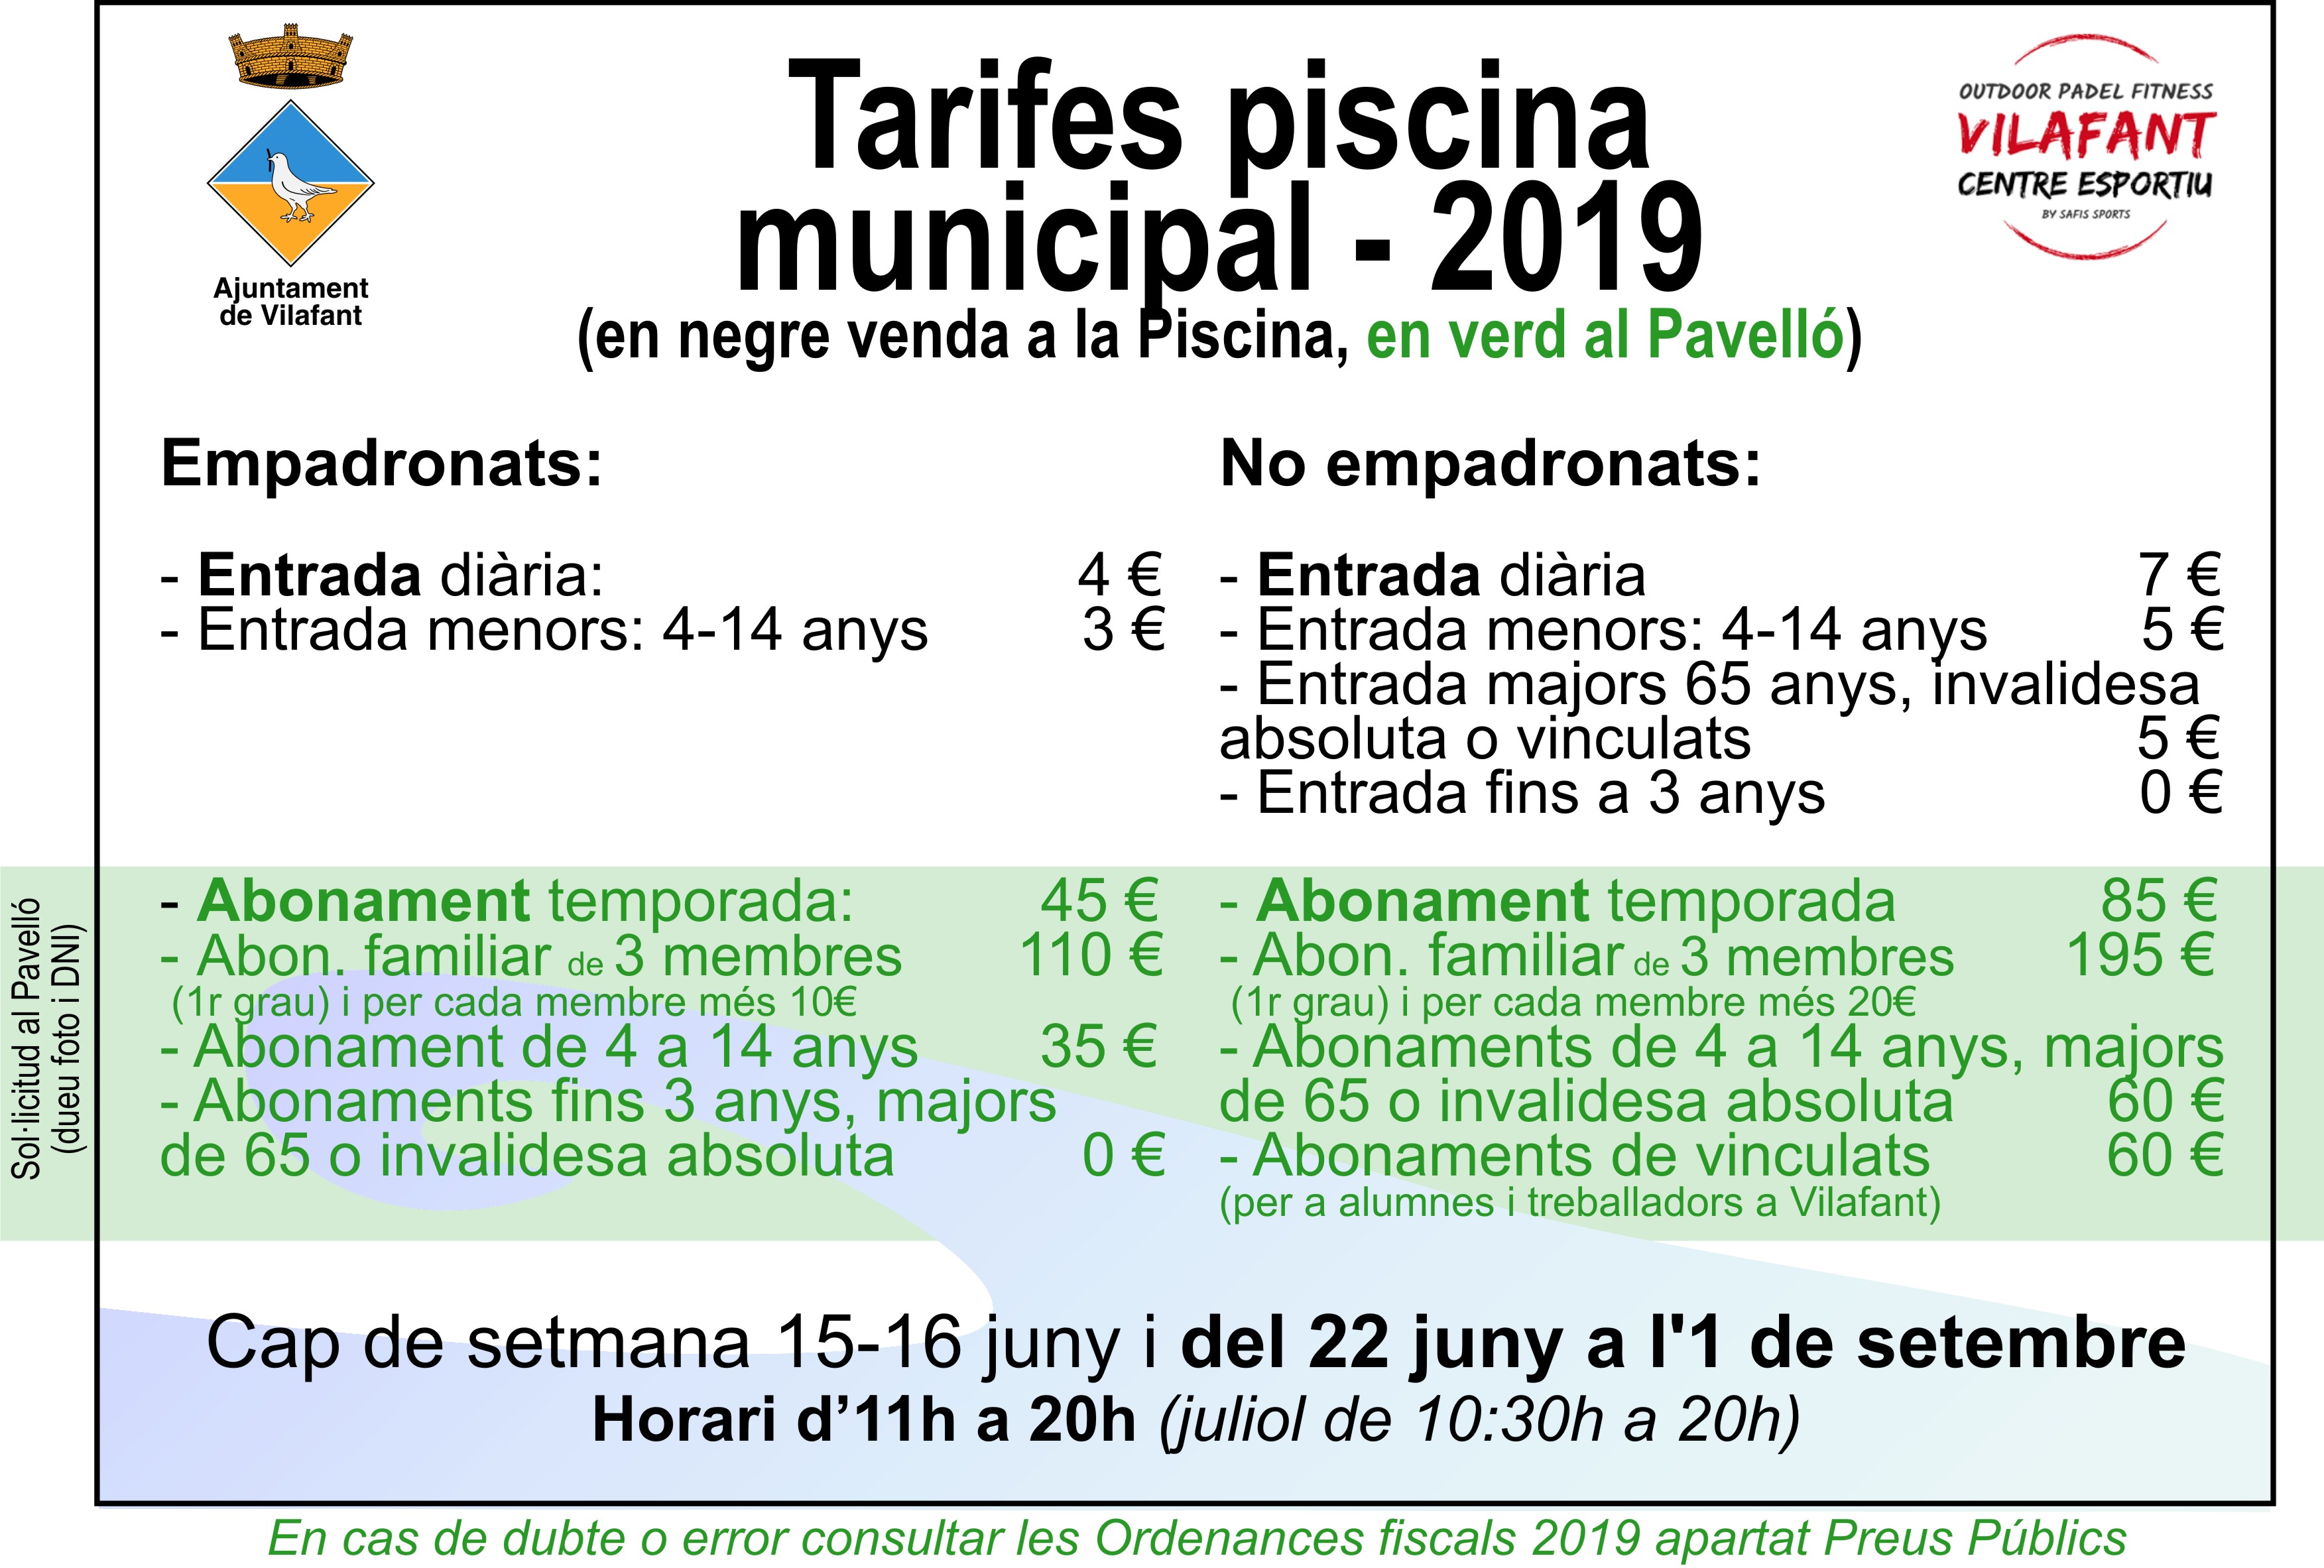 Tarifa Piscina Municipal 2019